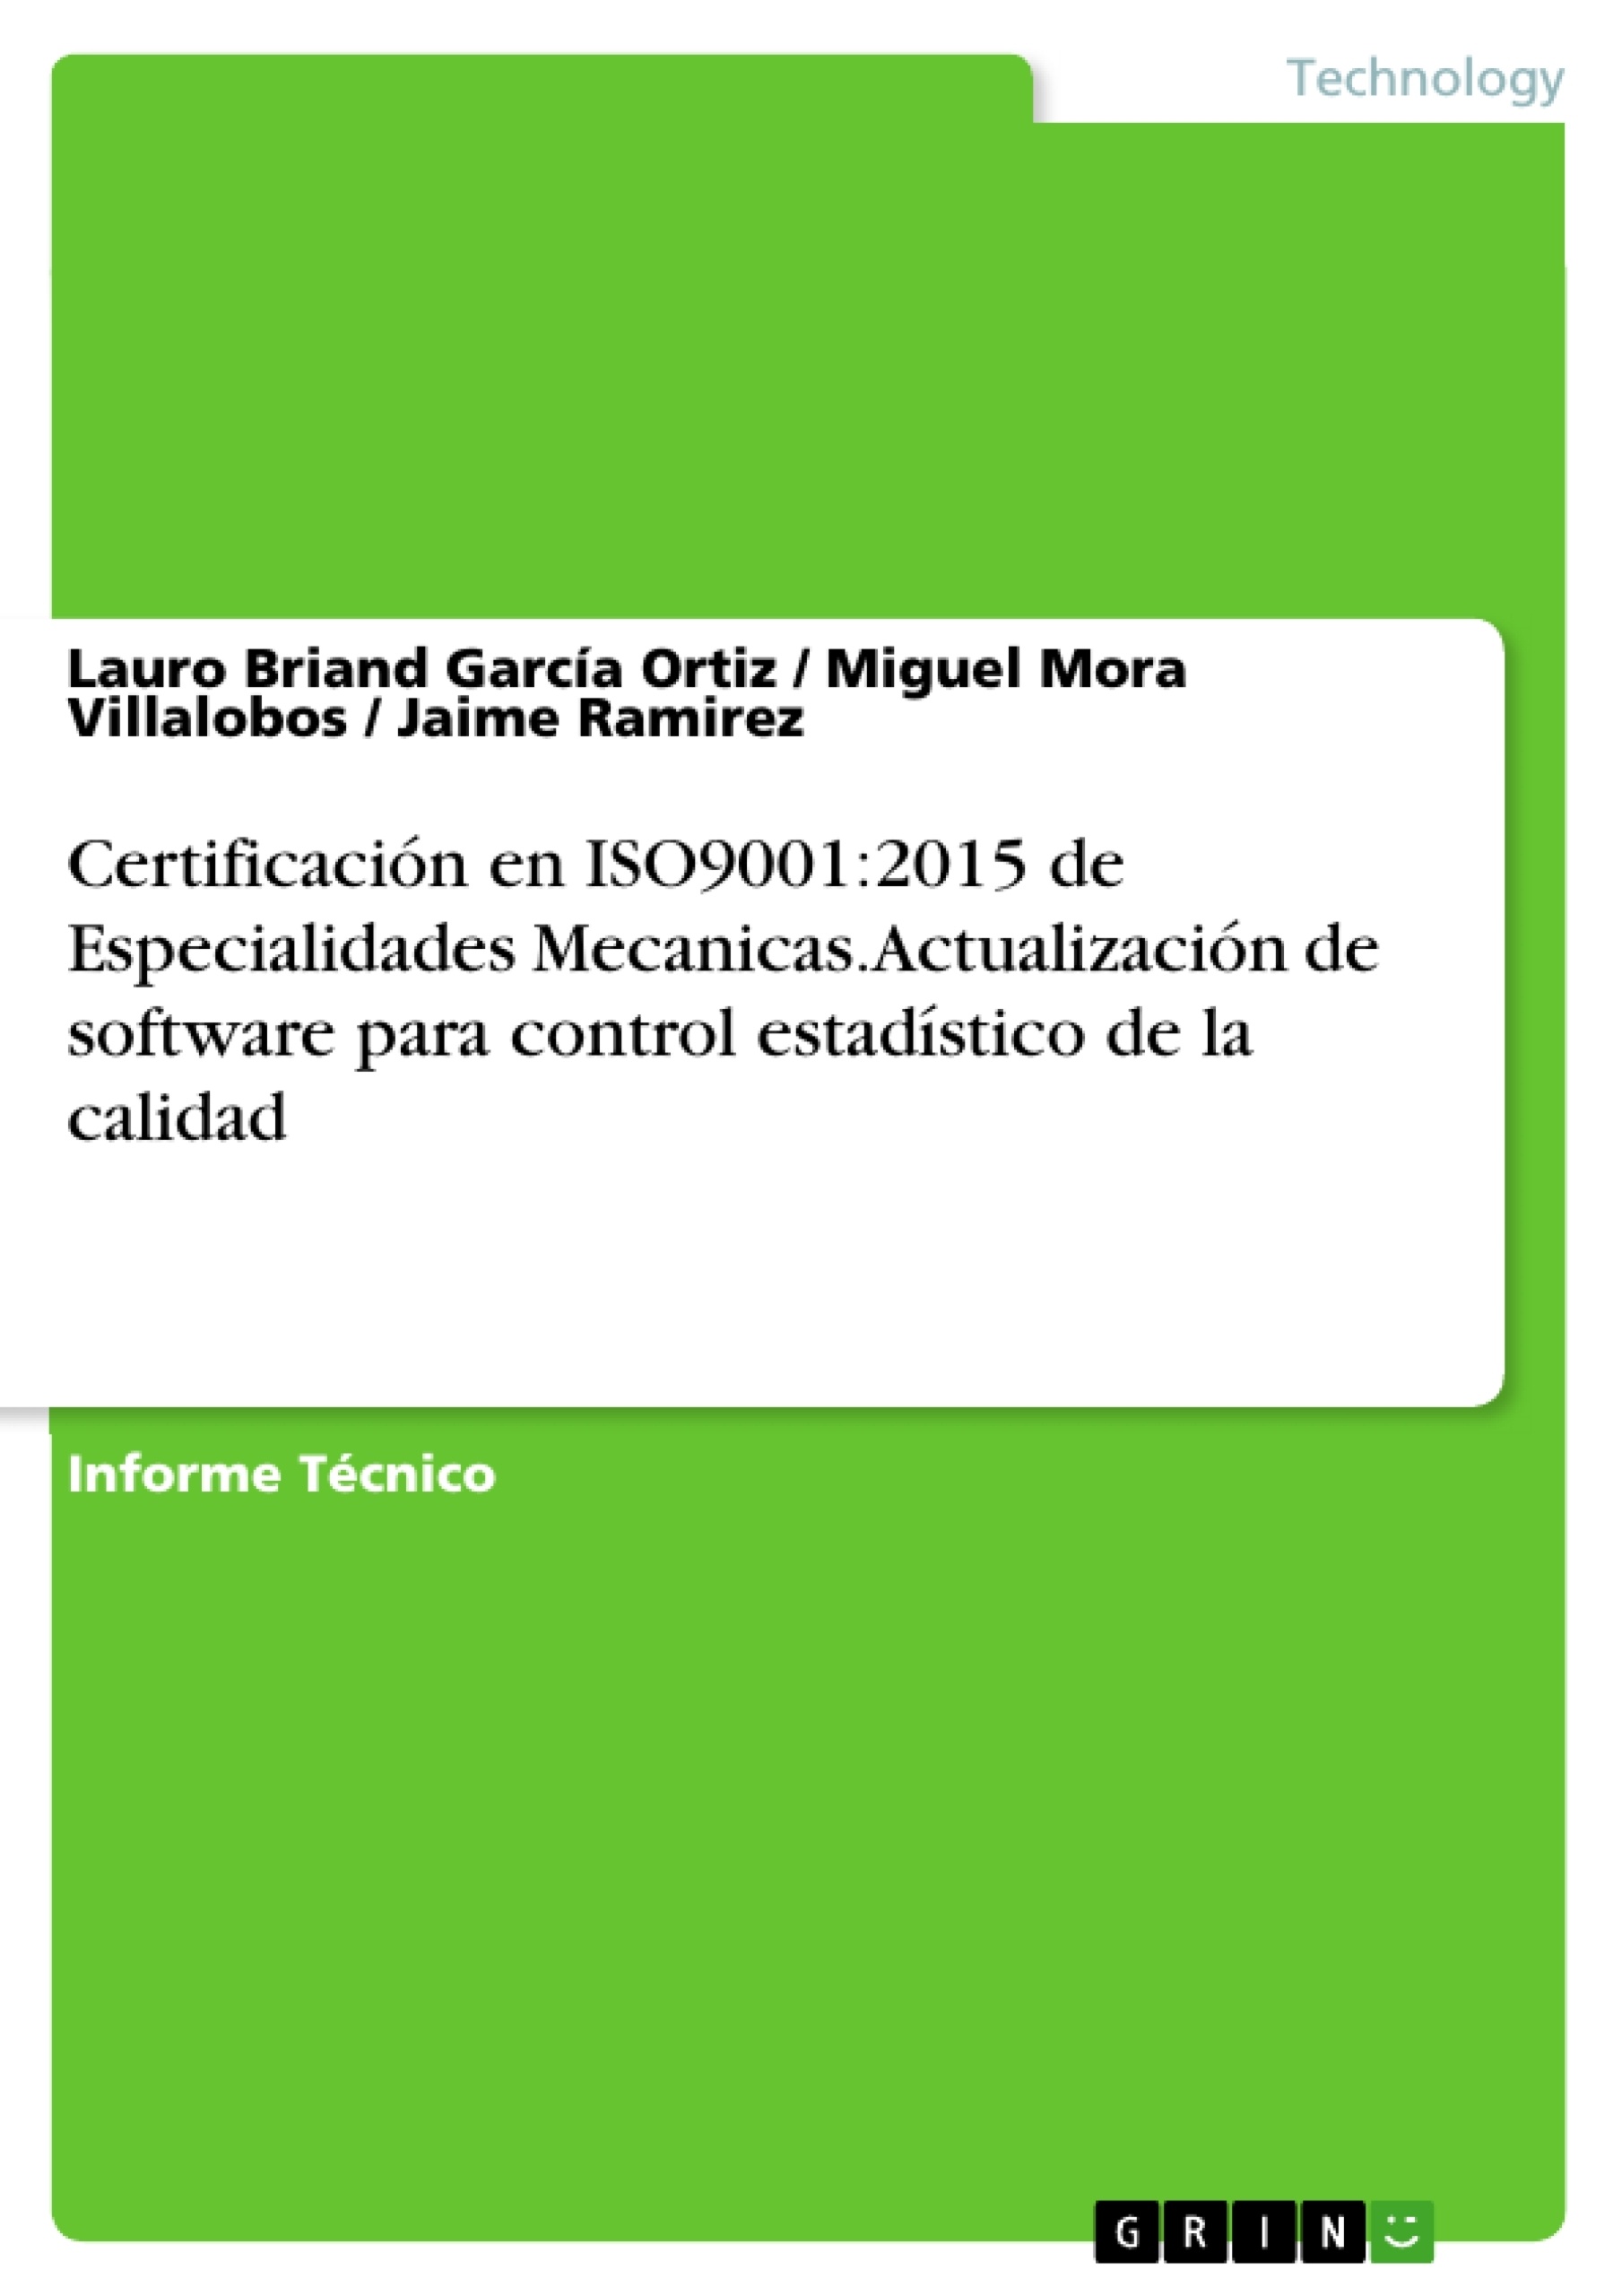 Título: Certificación en ISO9001:2015 de Especialidades Mecanicas. Actualización de software para control estadístico de la calidad